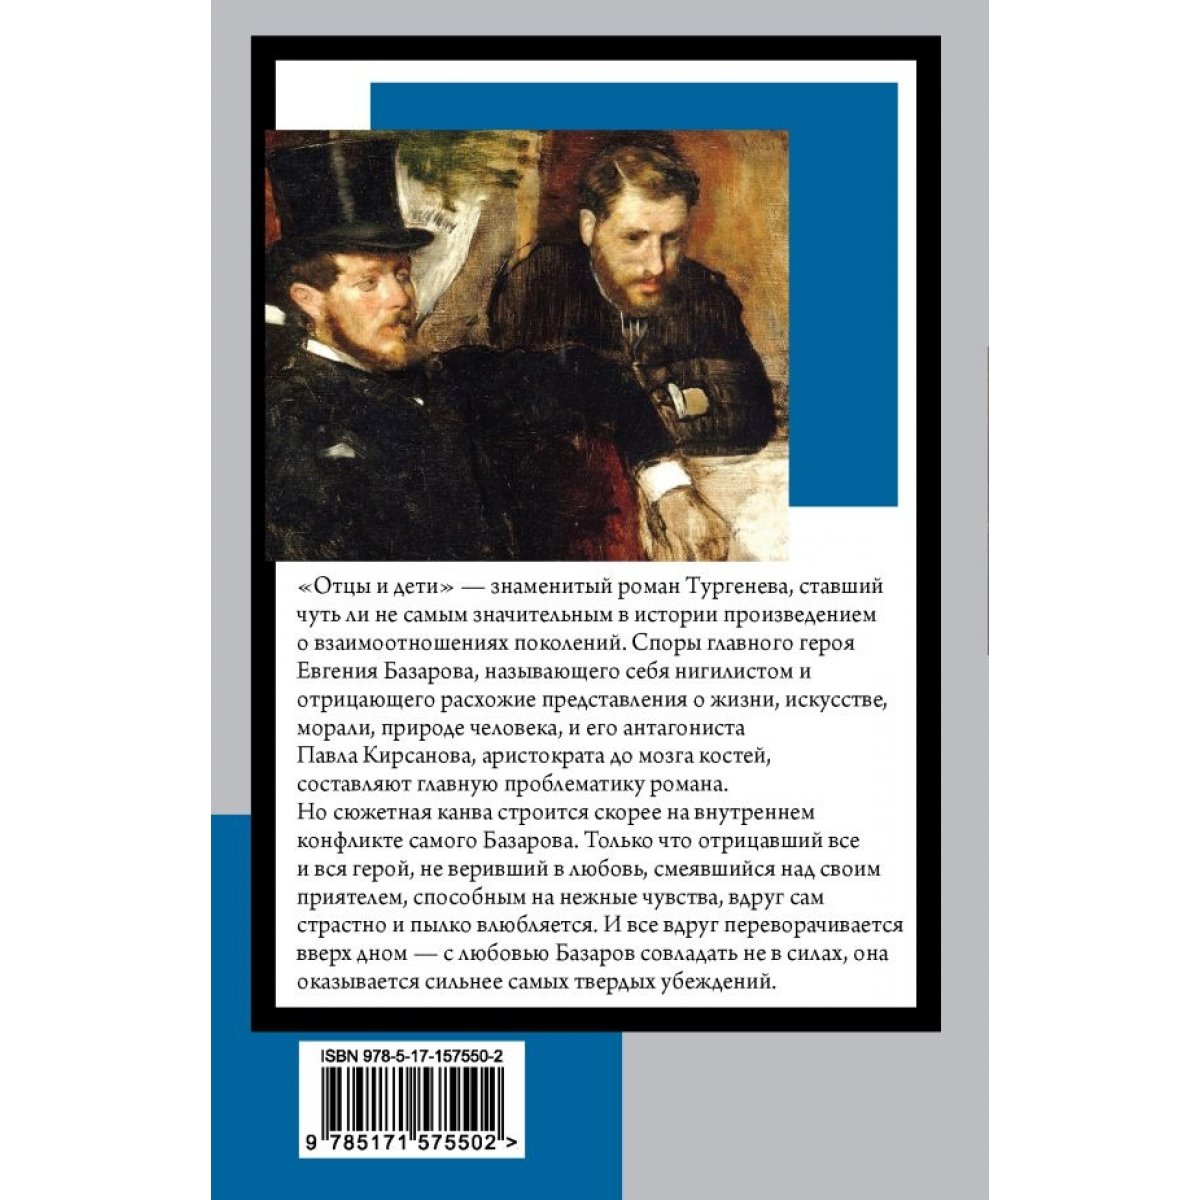 «Какое отношение было у Базарова к аристократии?» — Яндекс Кью